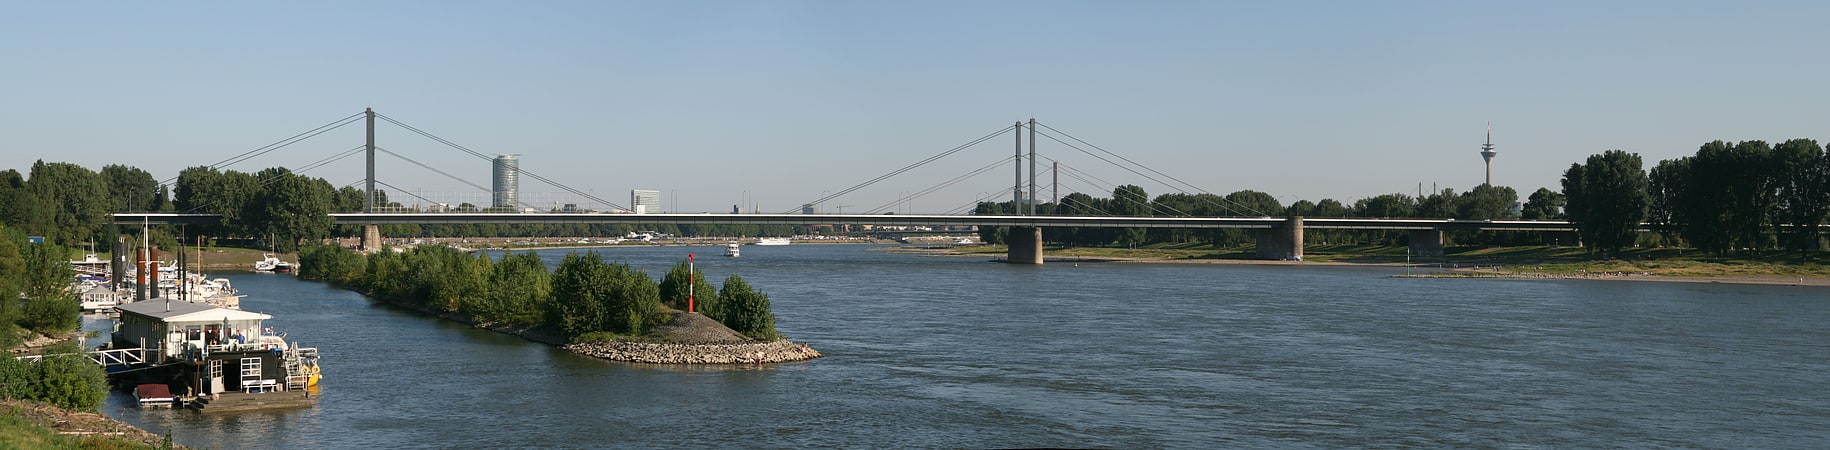 Brücke in Düsseldorf, Nordrhein-Westfalen